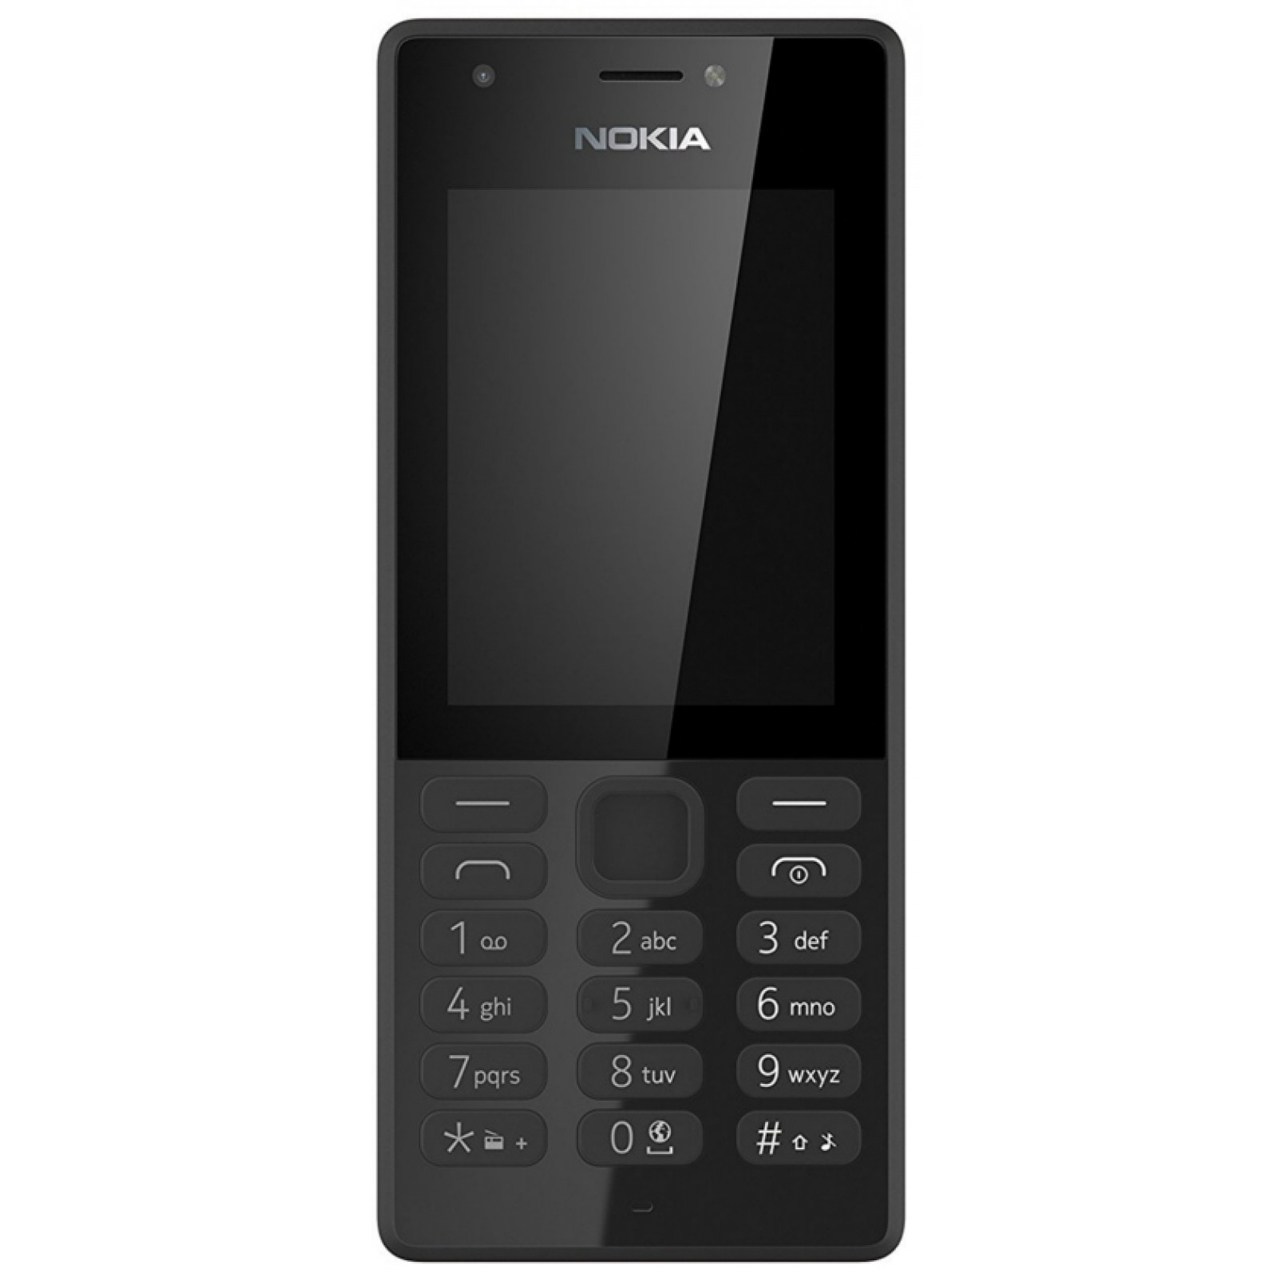 گوشی موبایل نوکیا مدل 216 دو سیم کارت - با برچسب قیمت مصرف کننده